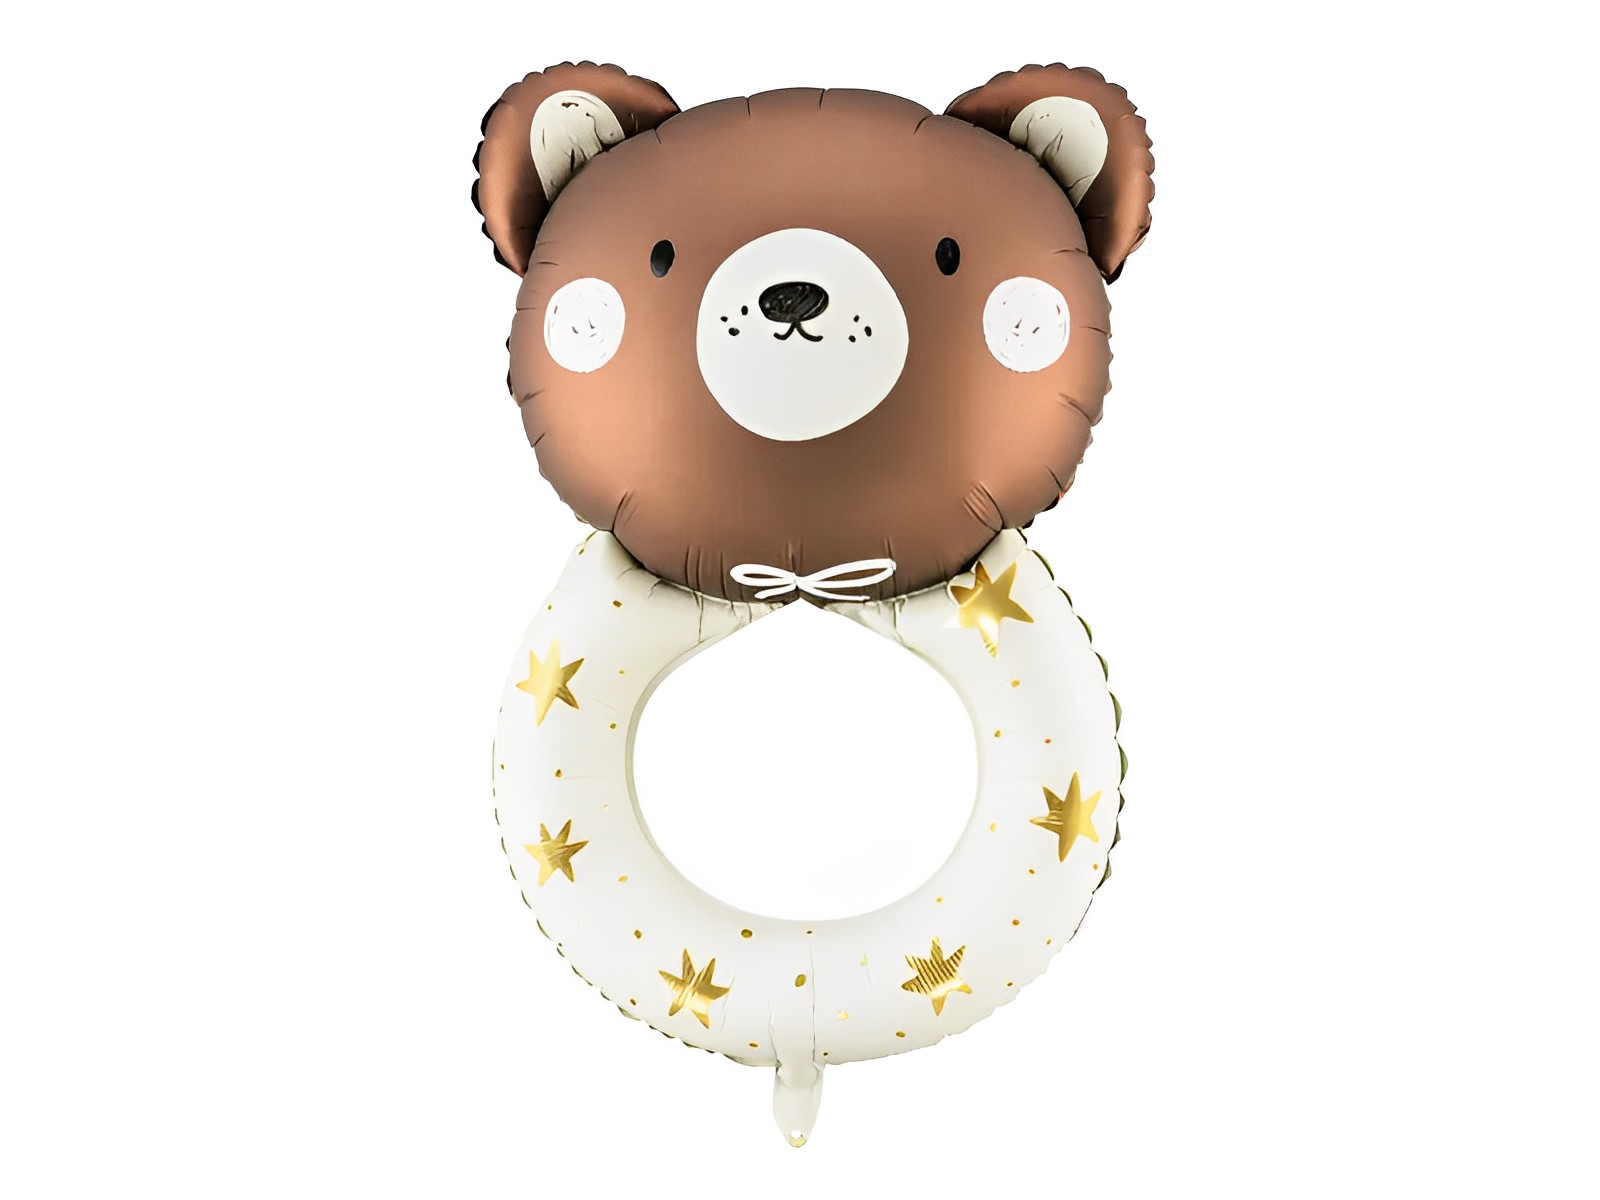 Balon 4D Teddy Bear IdealStore, Din folie in forma de ursulet ,Mix de culori,Dimensiune 61 x 88 cm,Poate fi umflat atat cu Aer cat si cu Heliu,Ideal pentru o petrecere reusita